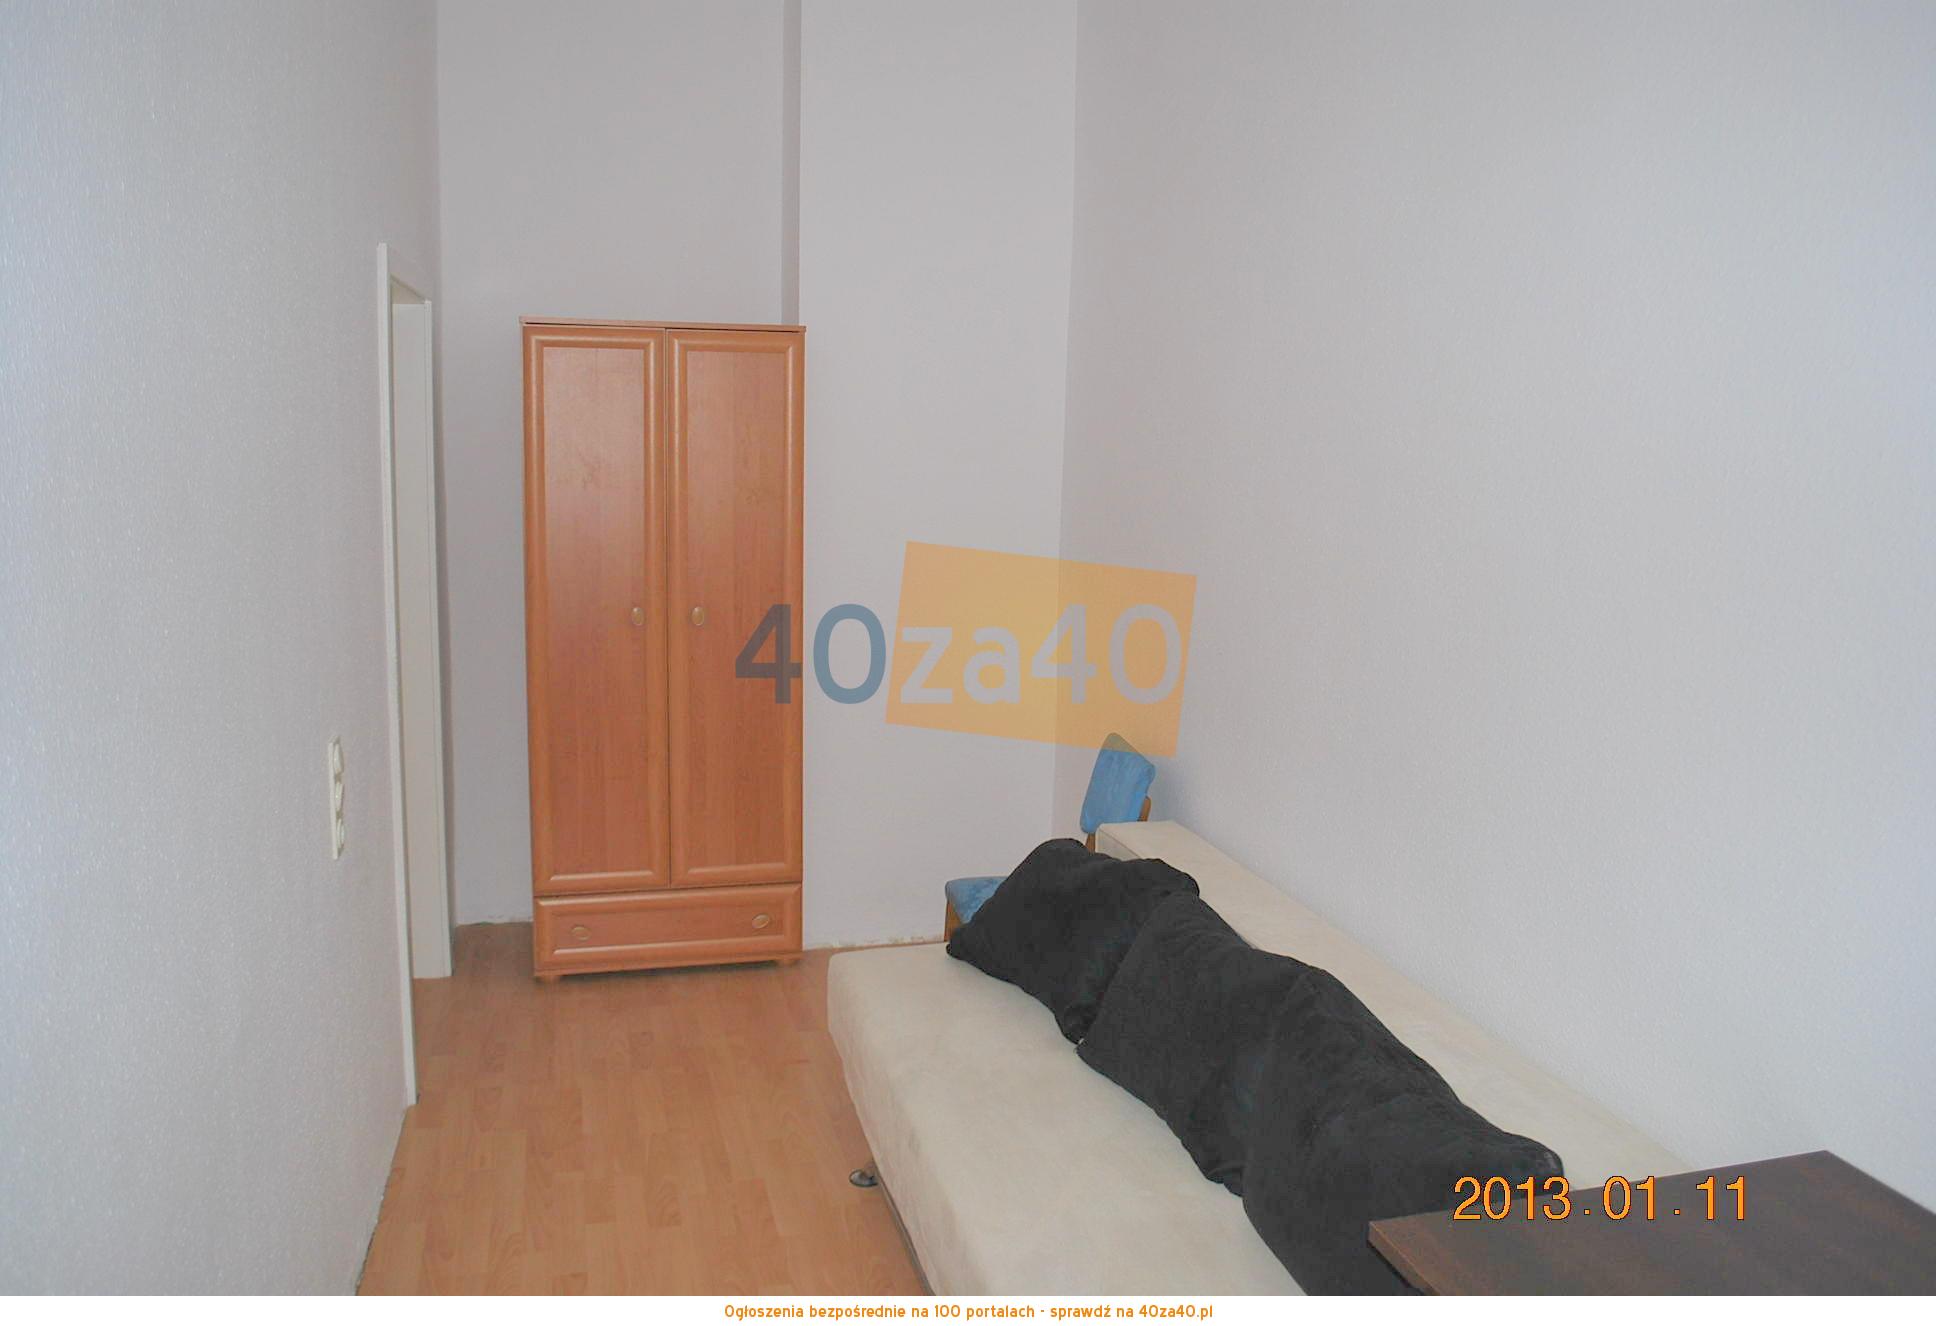 Mieszkanie do wynajęcia, pokoje: 1, cena: 187,00 PLN, kontakt: 888 262 363